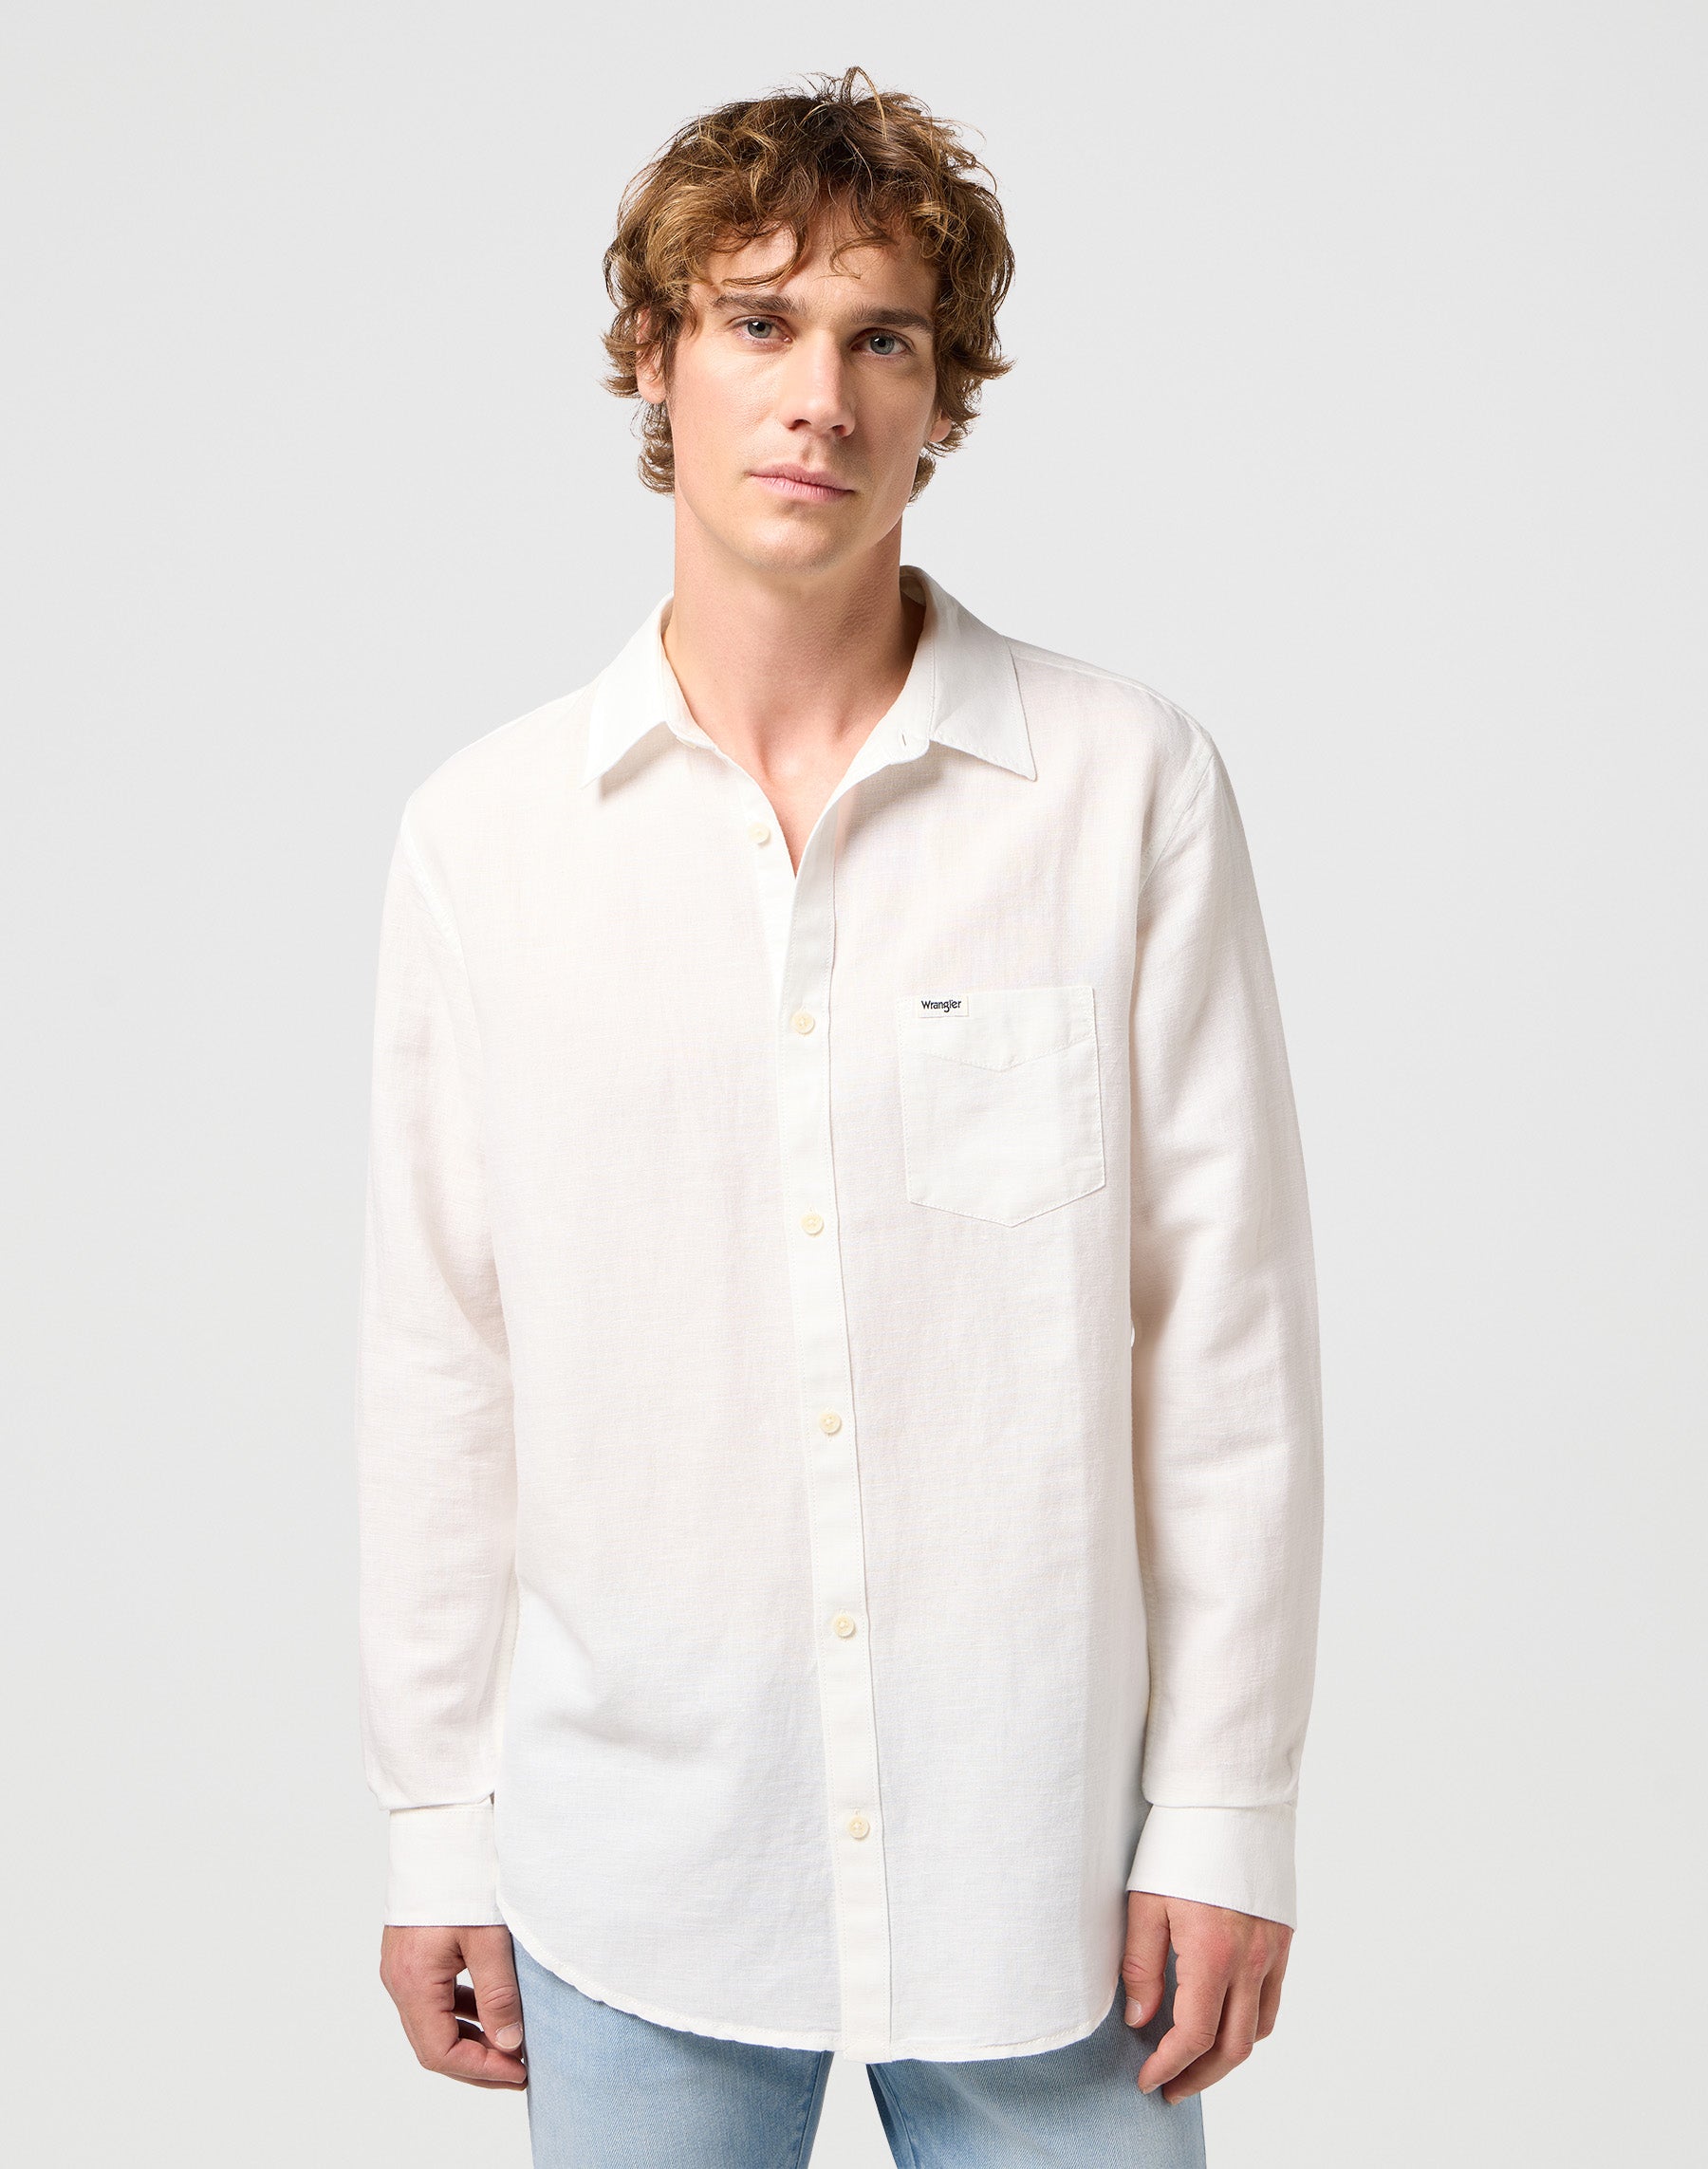 One Pocket Shirt in Worn White Hemden Wrangler   